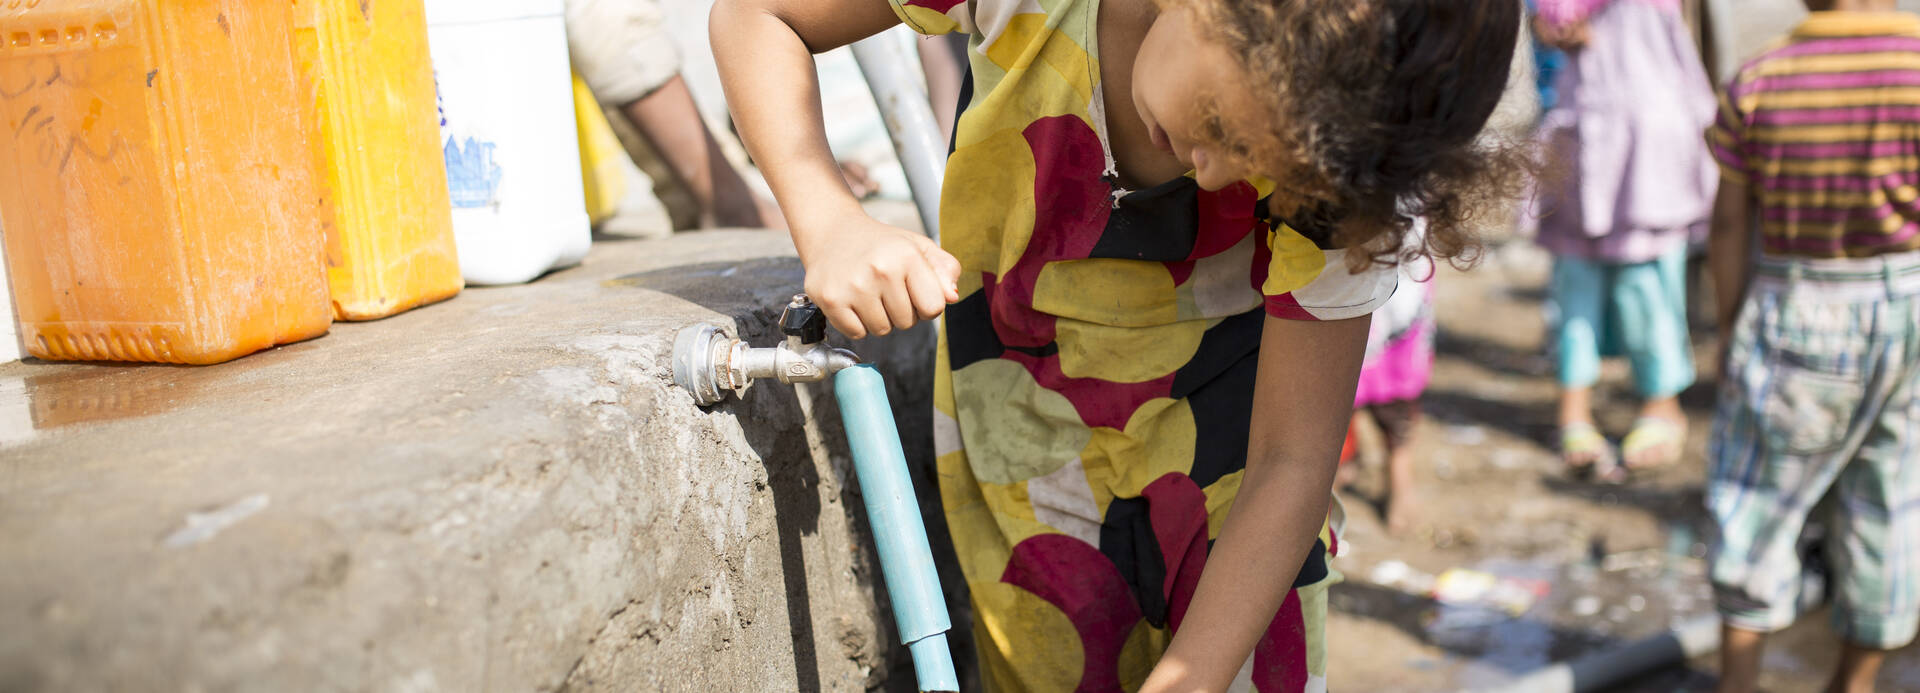 Kind aus dem Jemen füllt Wasserkanister